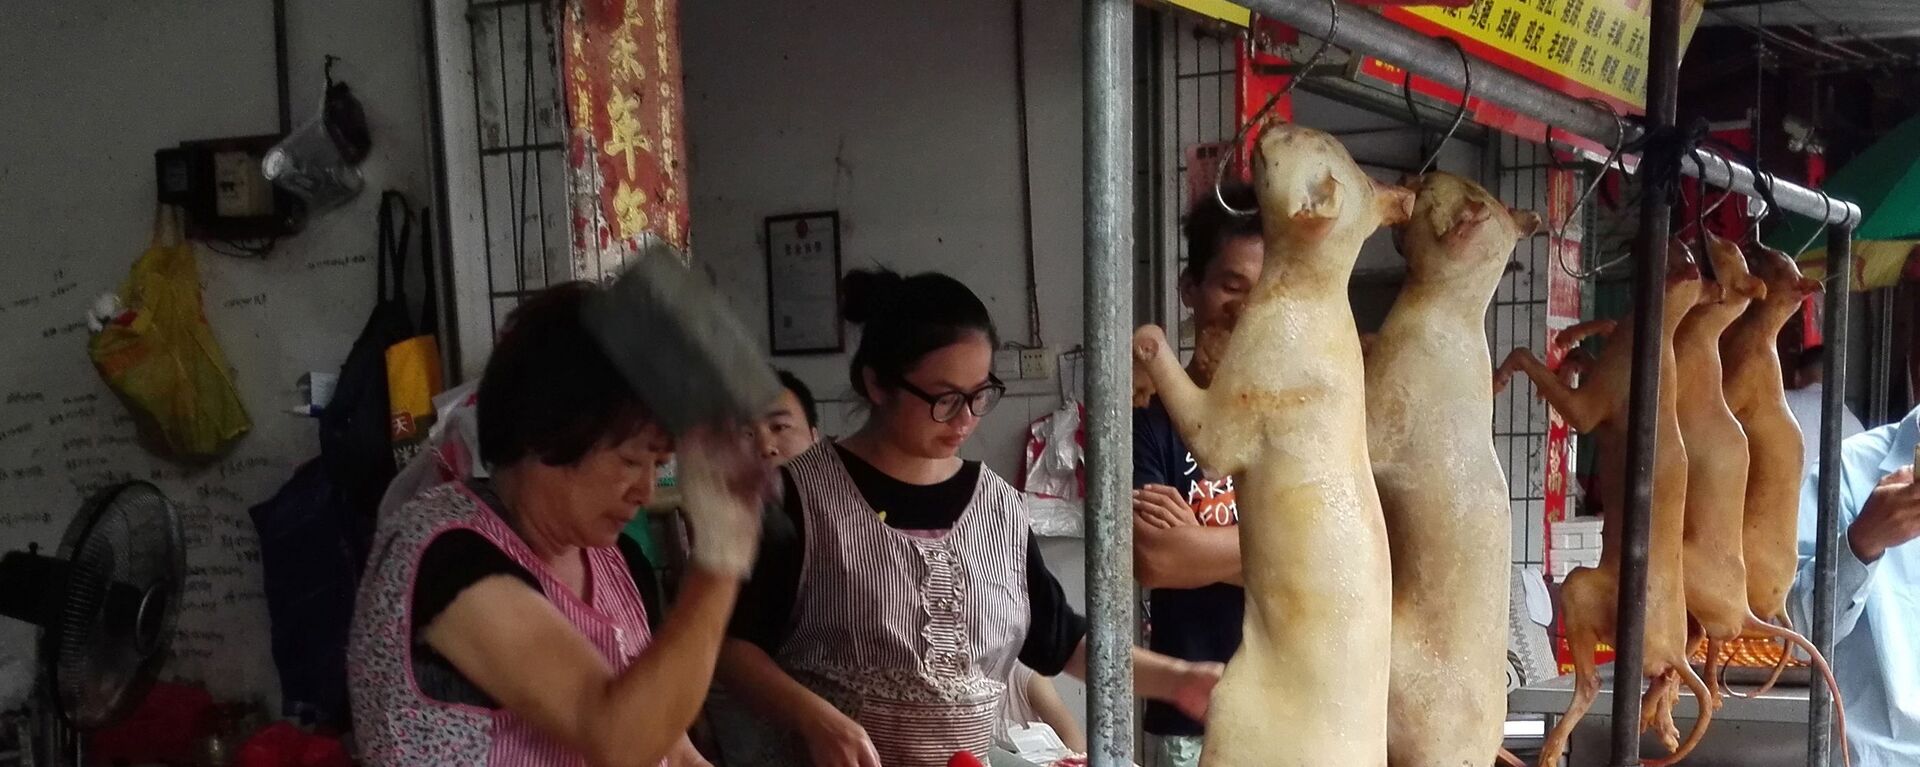 thịt chó Trung Quốc  - Sputnik Việt Nam, 1920, 20.12.2019